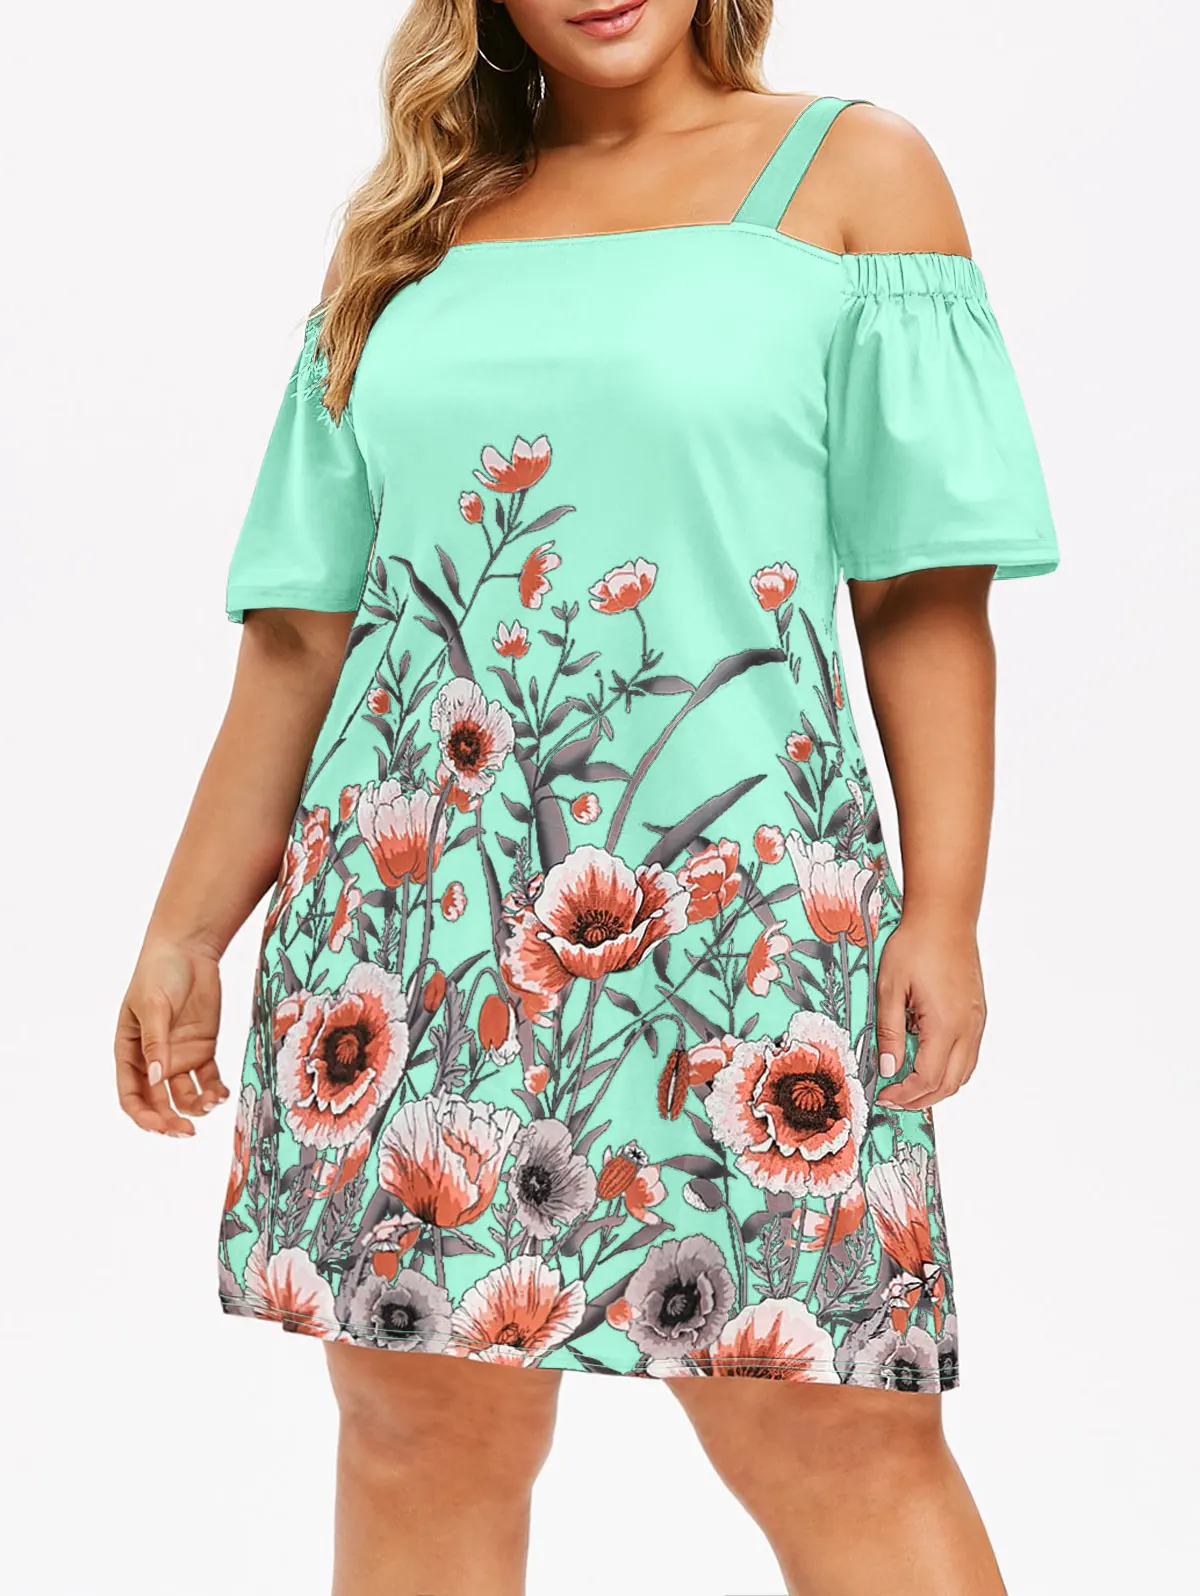 Wipalo размера плюс Цветочное платье с открытыми плечами летнее платье с короткими рукавами длиной до колена повседневное праздничное женское платье Boho Vestidos - Цвет: Light Aquamarine